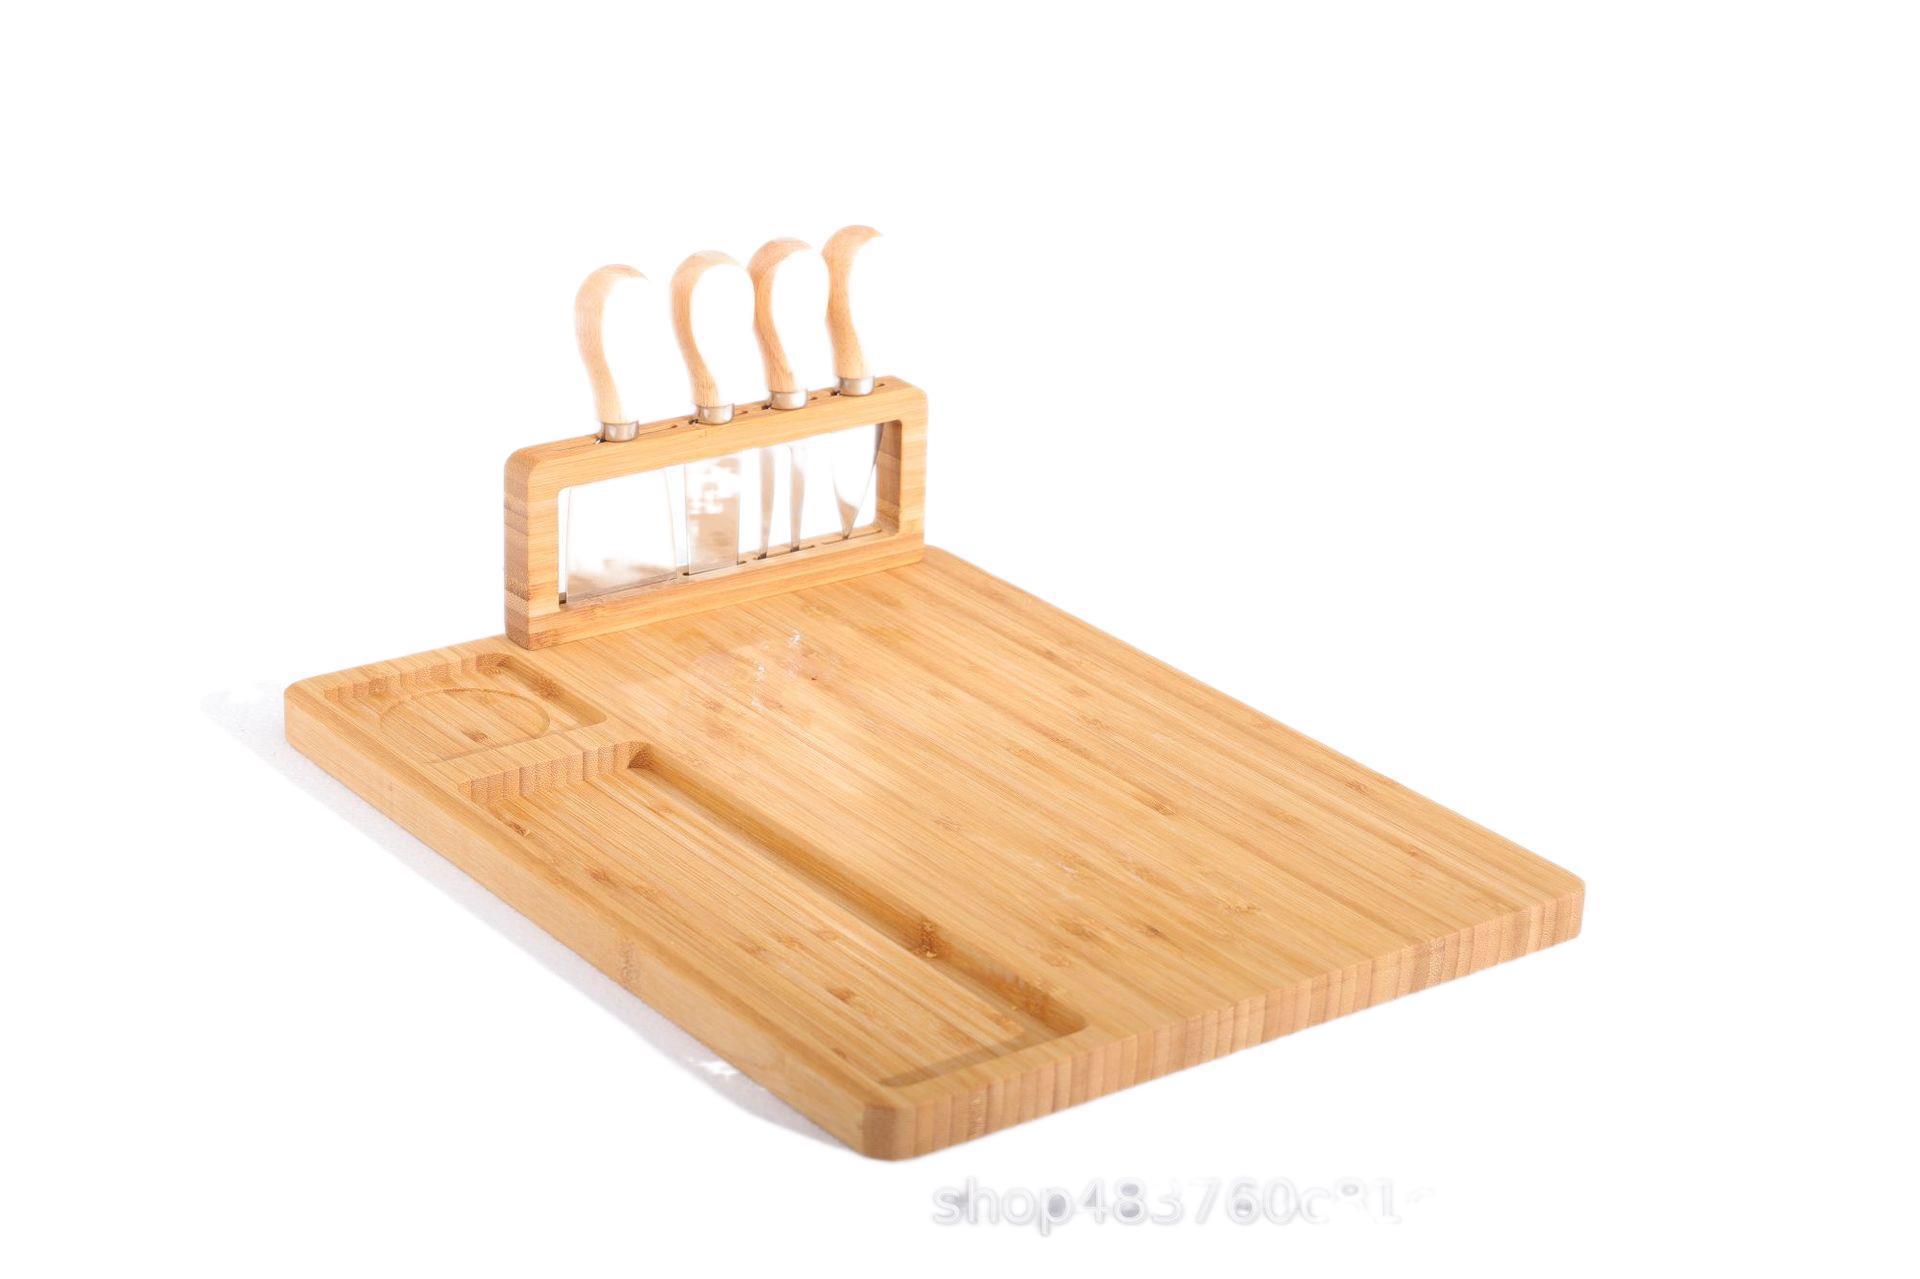 芝士板套装西餐牛排餐具创意竹木蛋糕板欧式刀叉套装水果板面包板